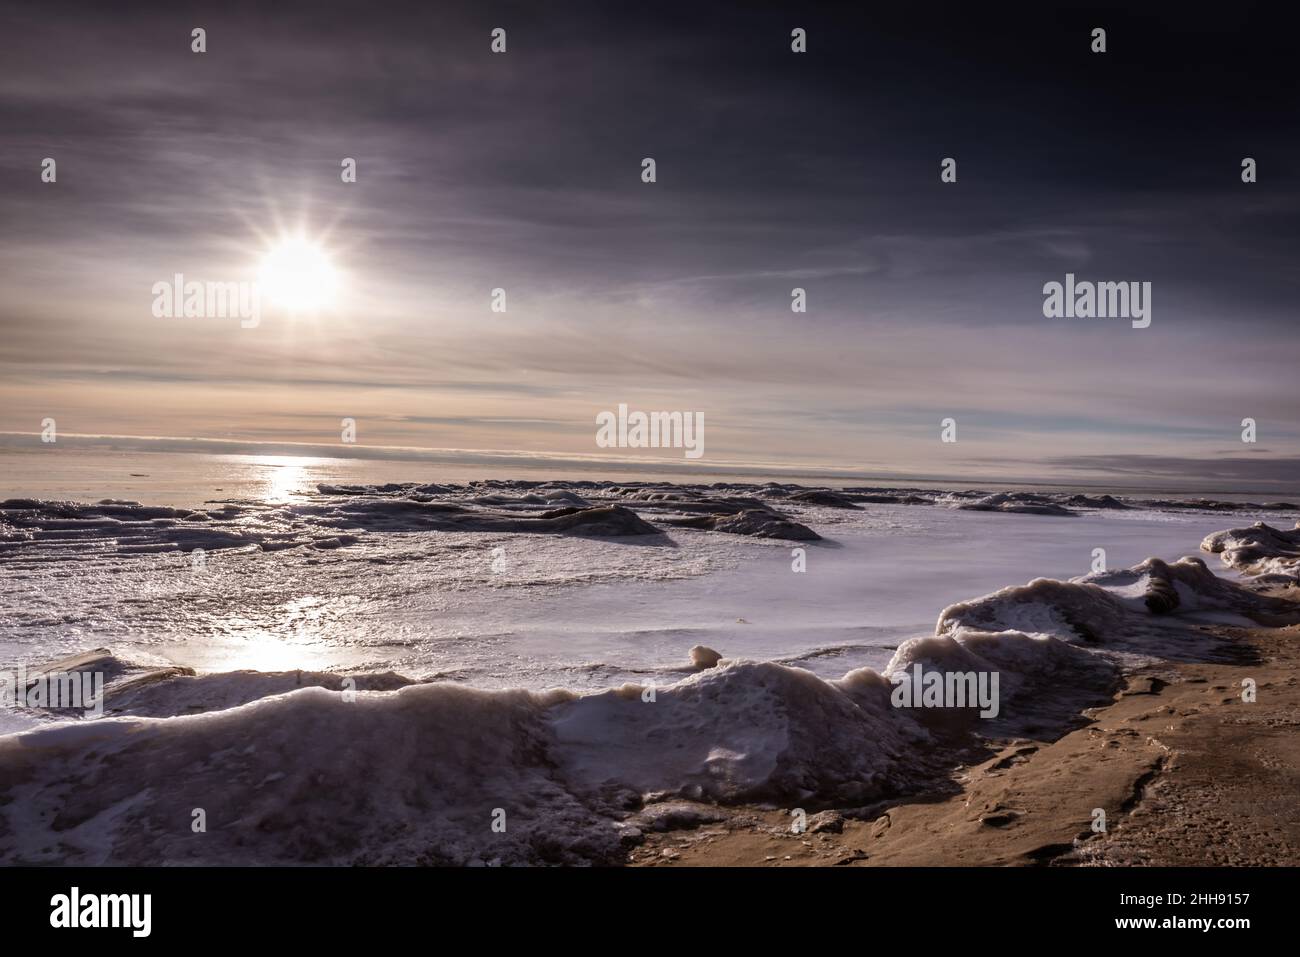 Alba sul ghiaccio galleggiante sul lago Huron durante l'inverno Foto Stock